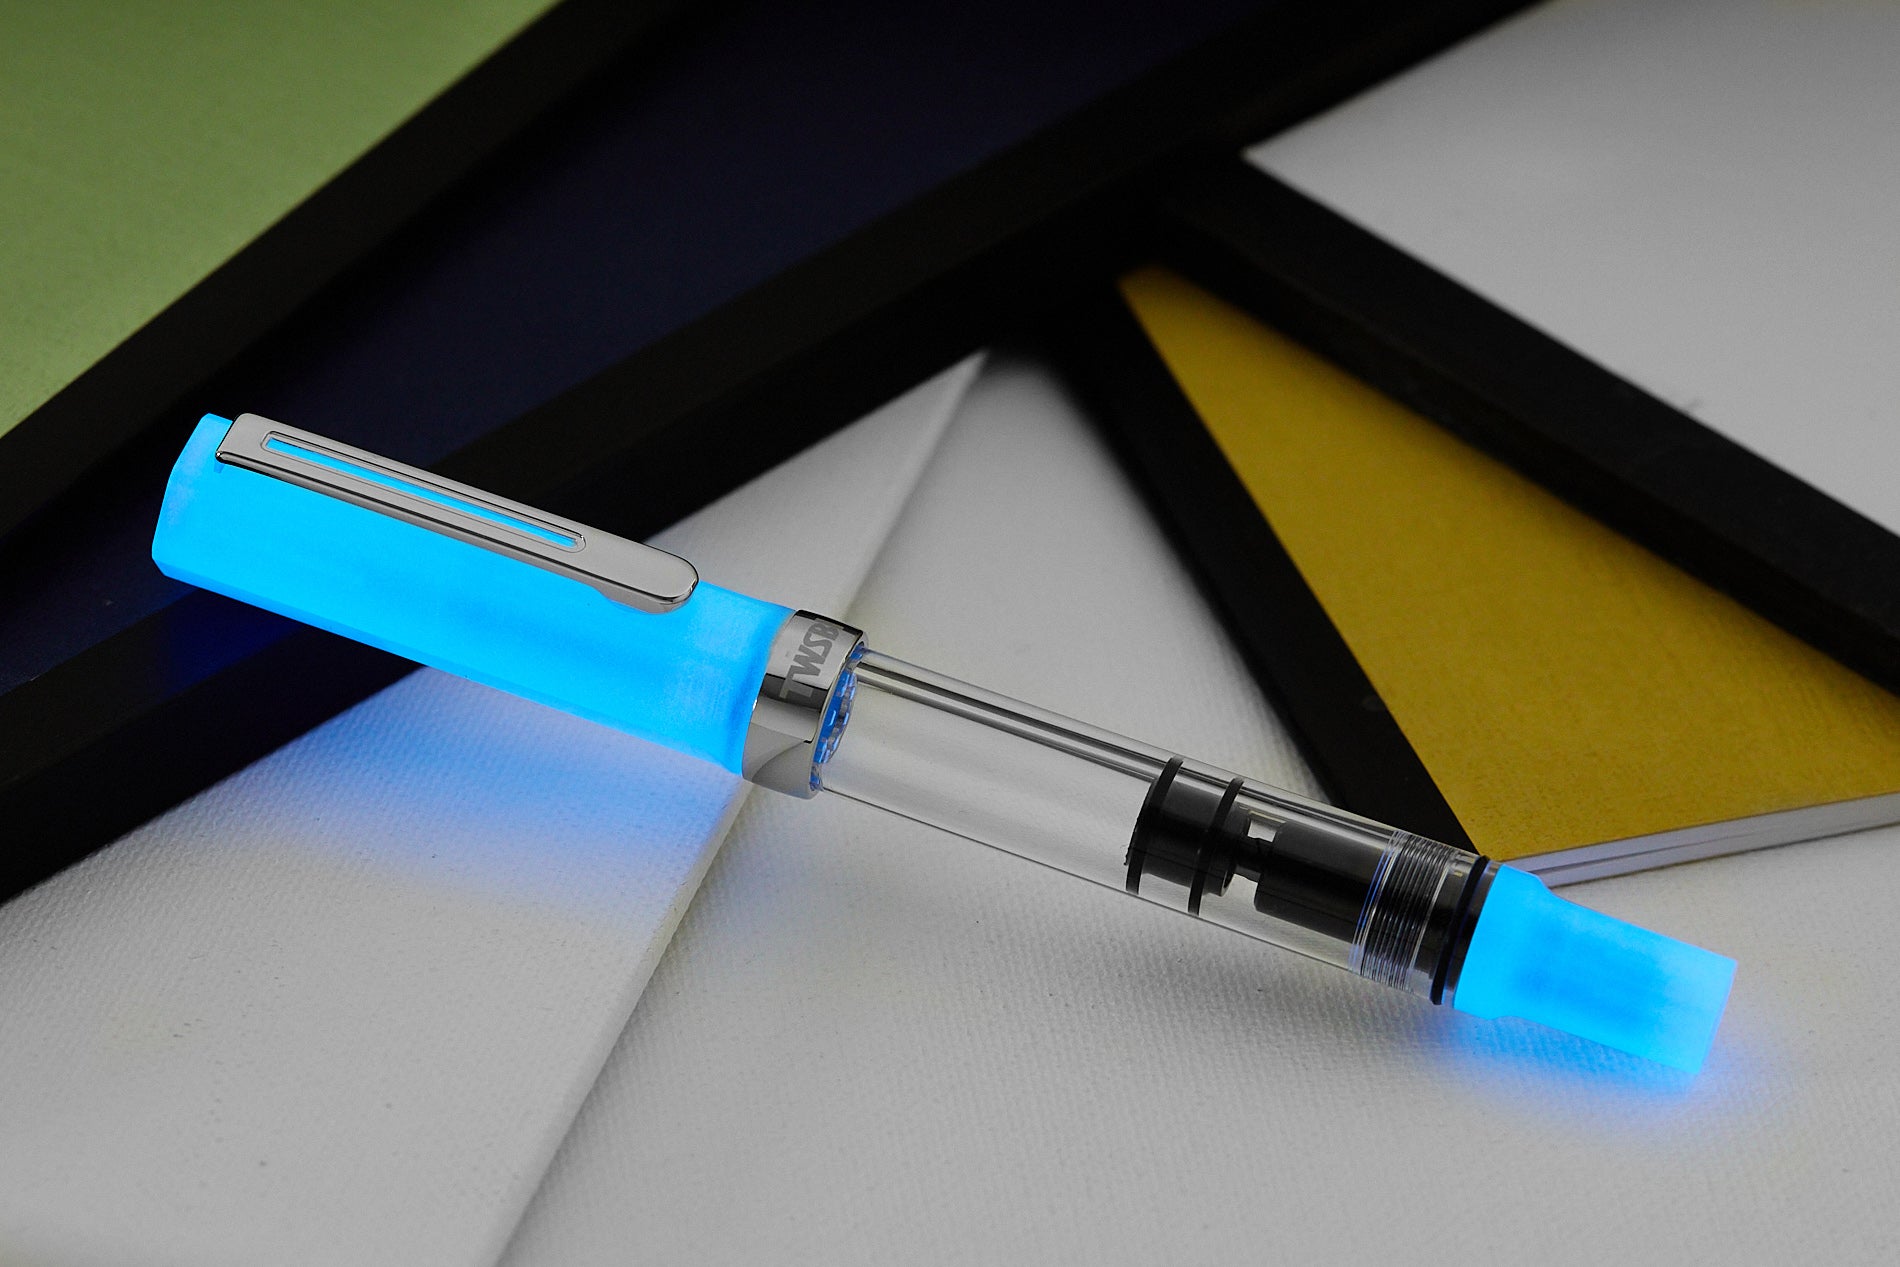 TWSBI ECO fountain pen glowing in the dark